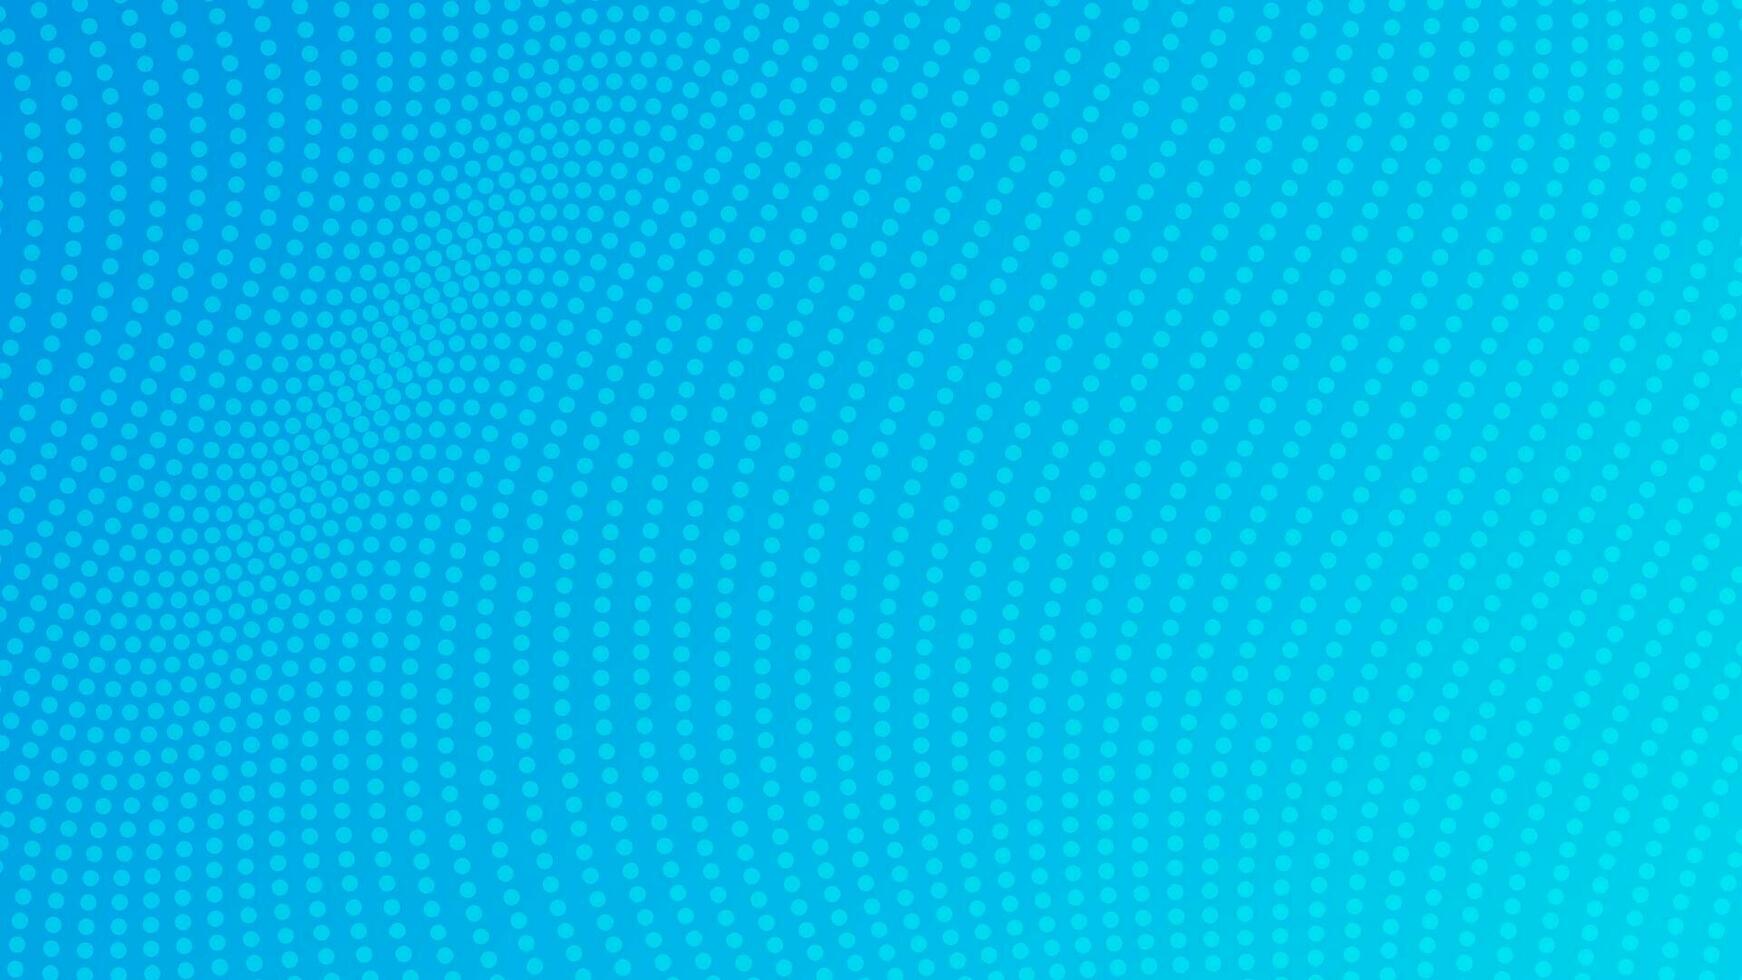 Halbtonverlaufshintergrund mit Punkten. abstraktes blau gepunktetes Pop-Art-Muster im Comic-Stil. Vektor-Illustration vektor